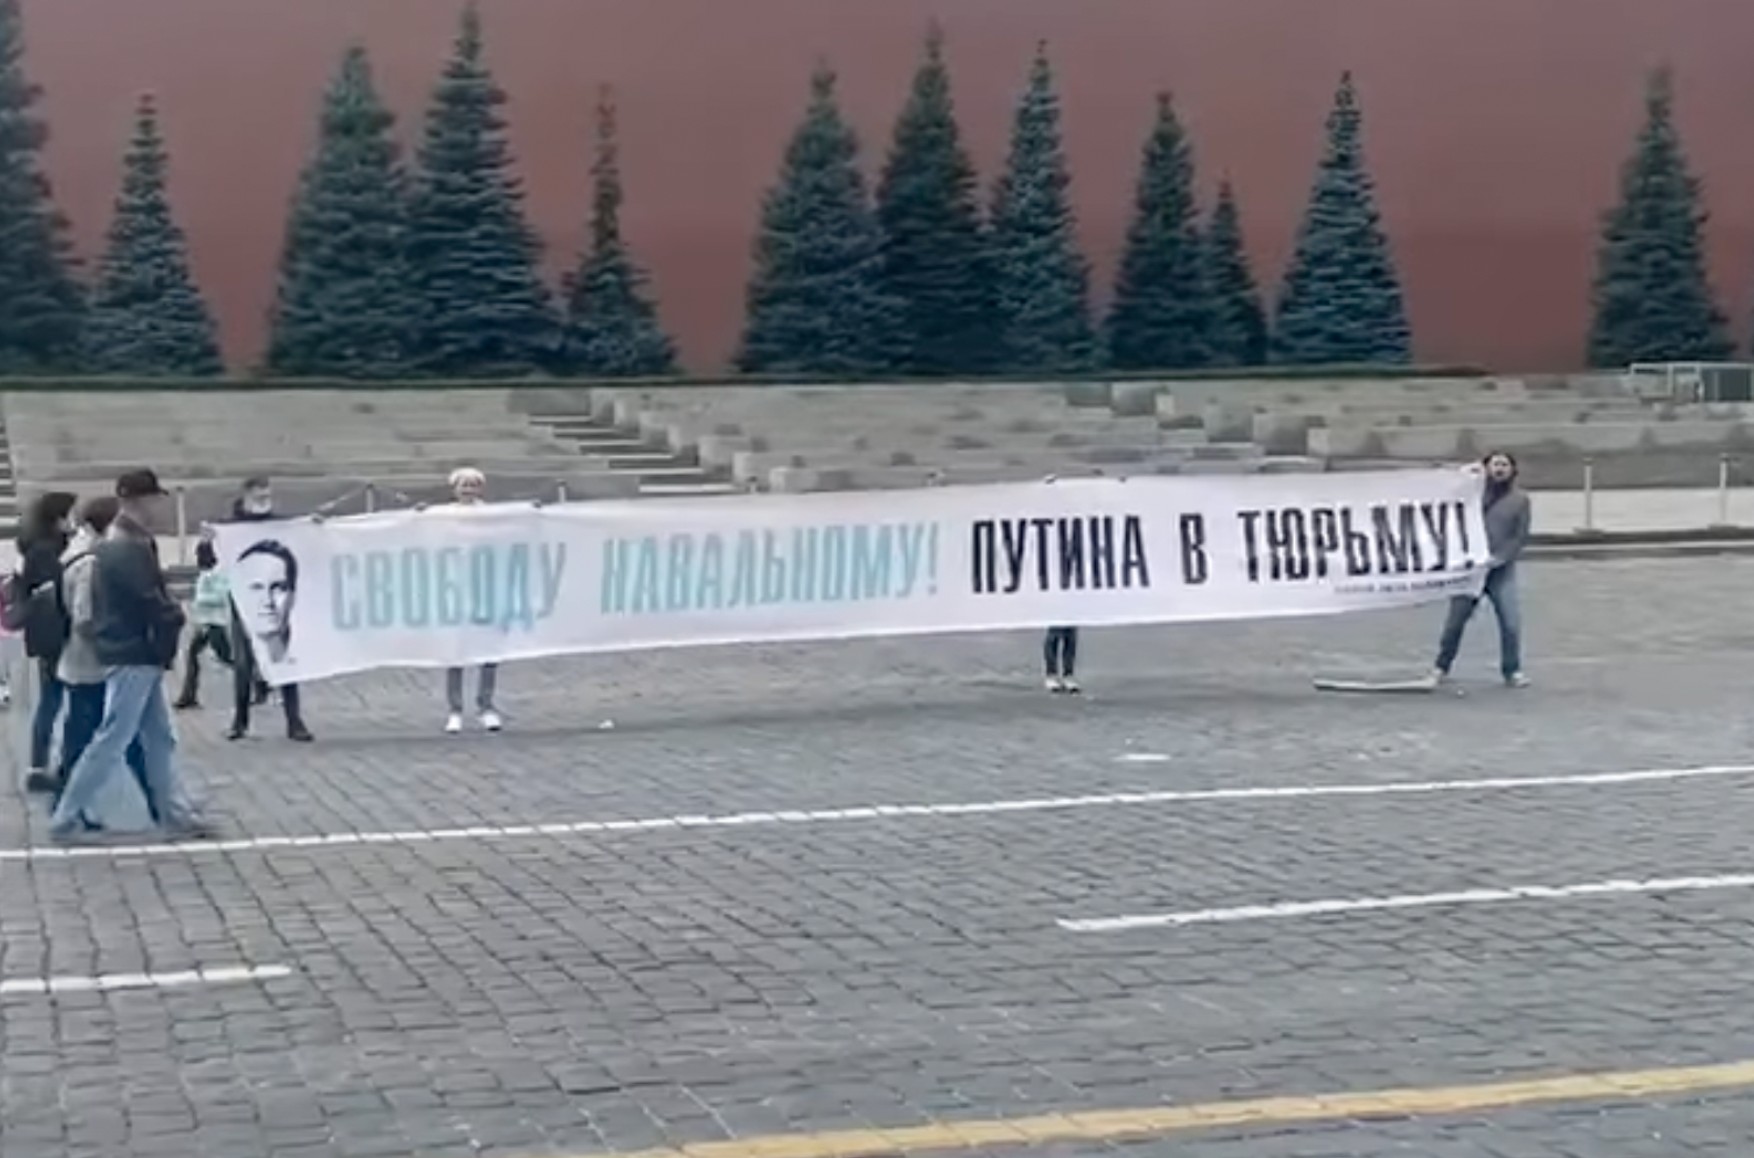 У Москві затримали чотирьох активістів з банером «Свободу Навальному! Путіна в тюрму! » і знімав їх журналіста